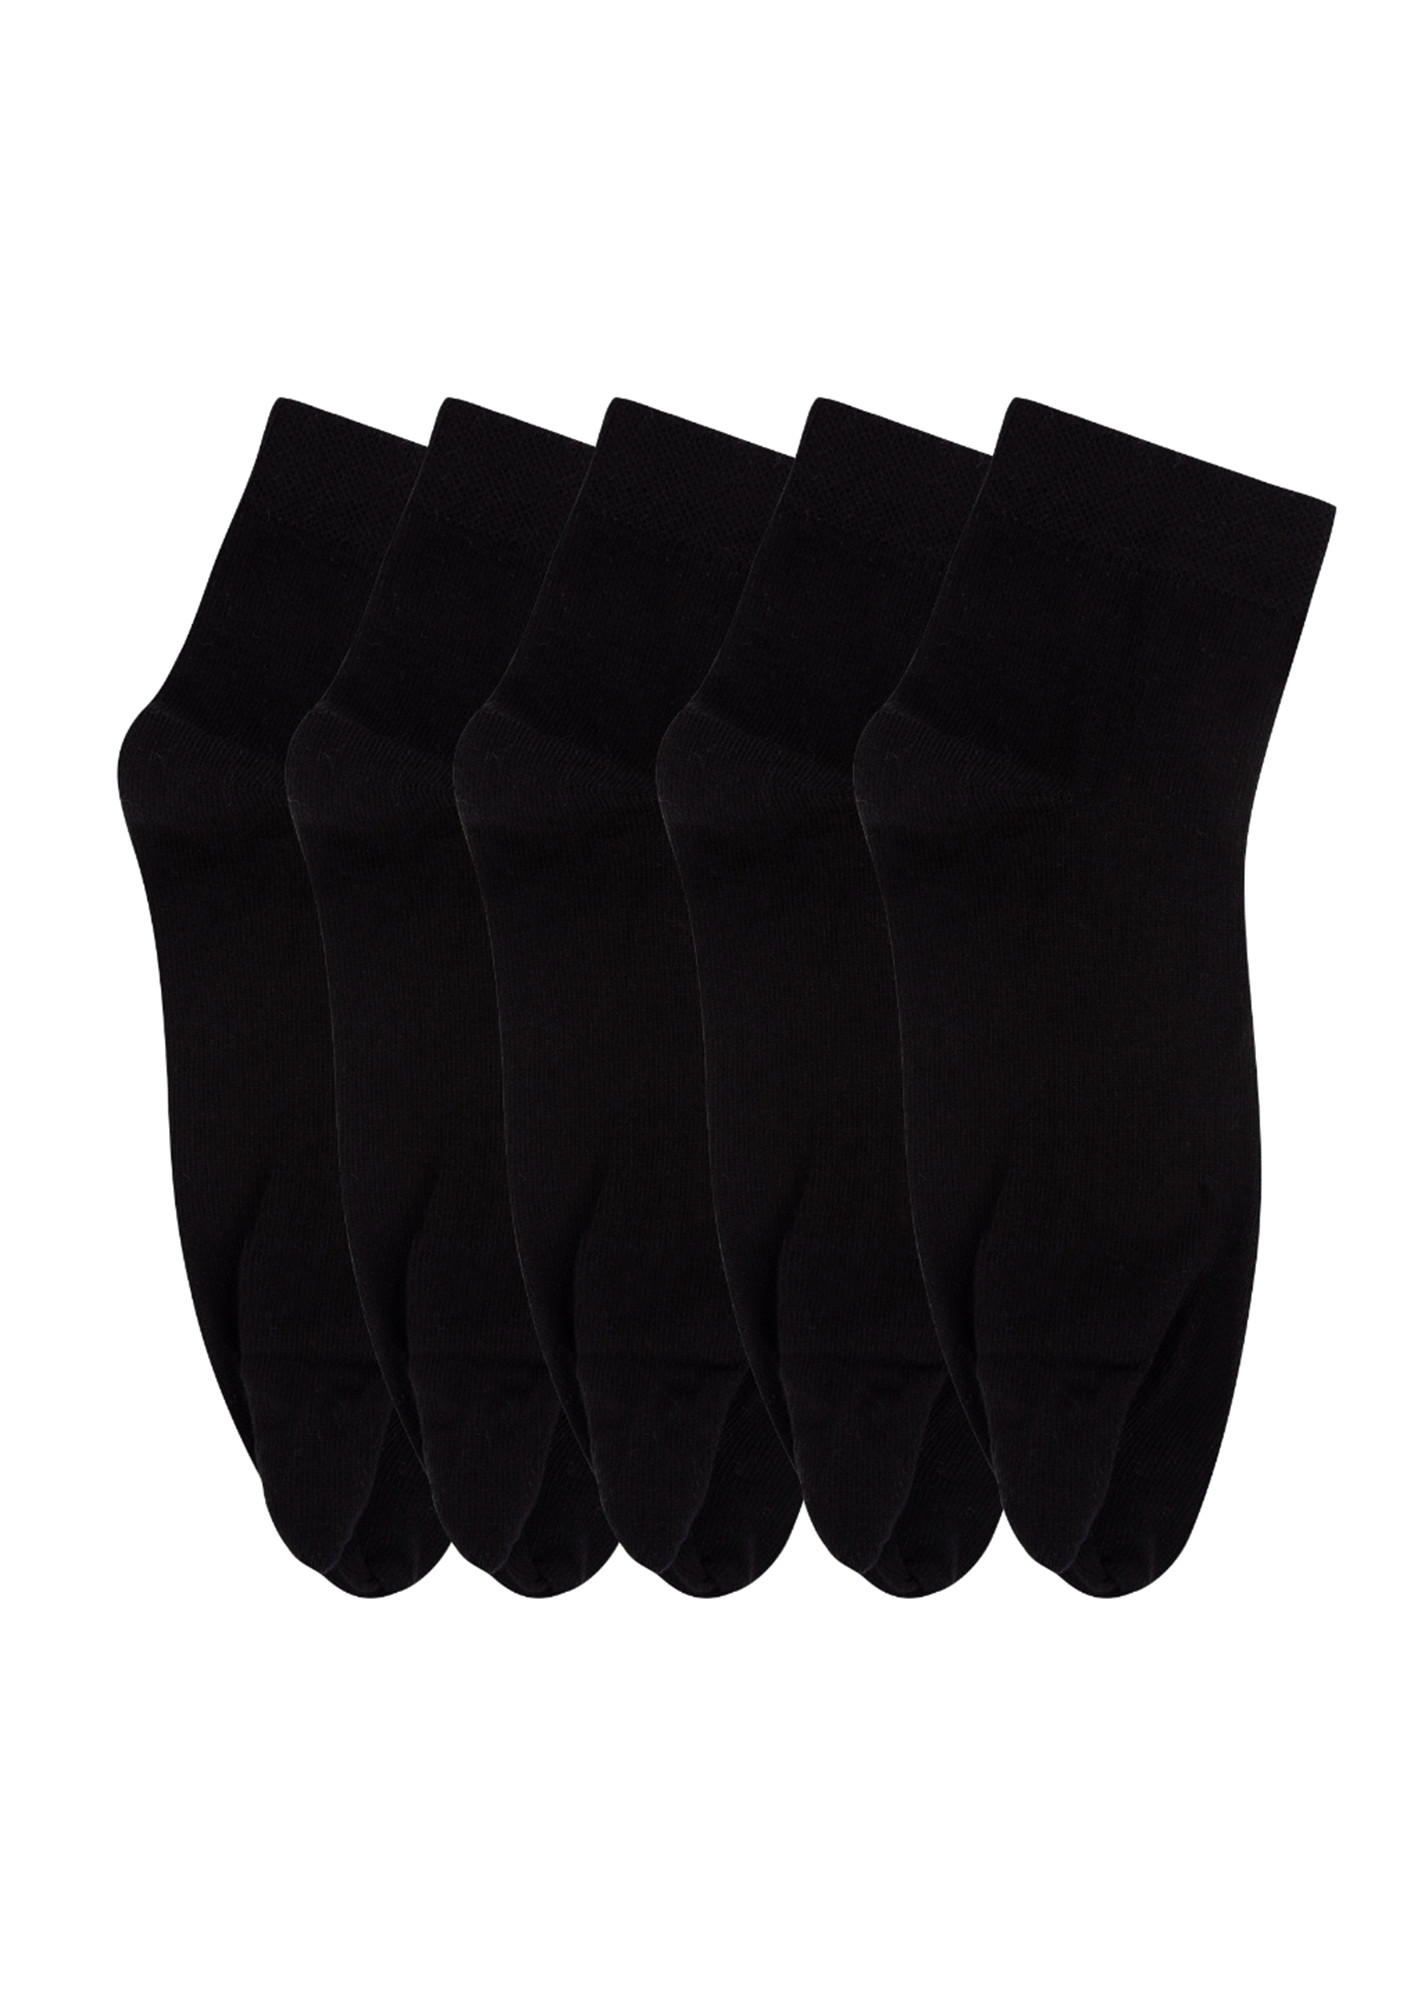 N2S NEXT2SKIN Women's Ankle Length Cotton Thumb Socks (Pack of 5) (Black)